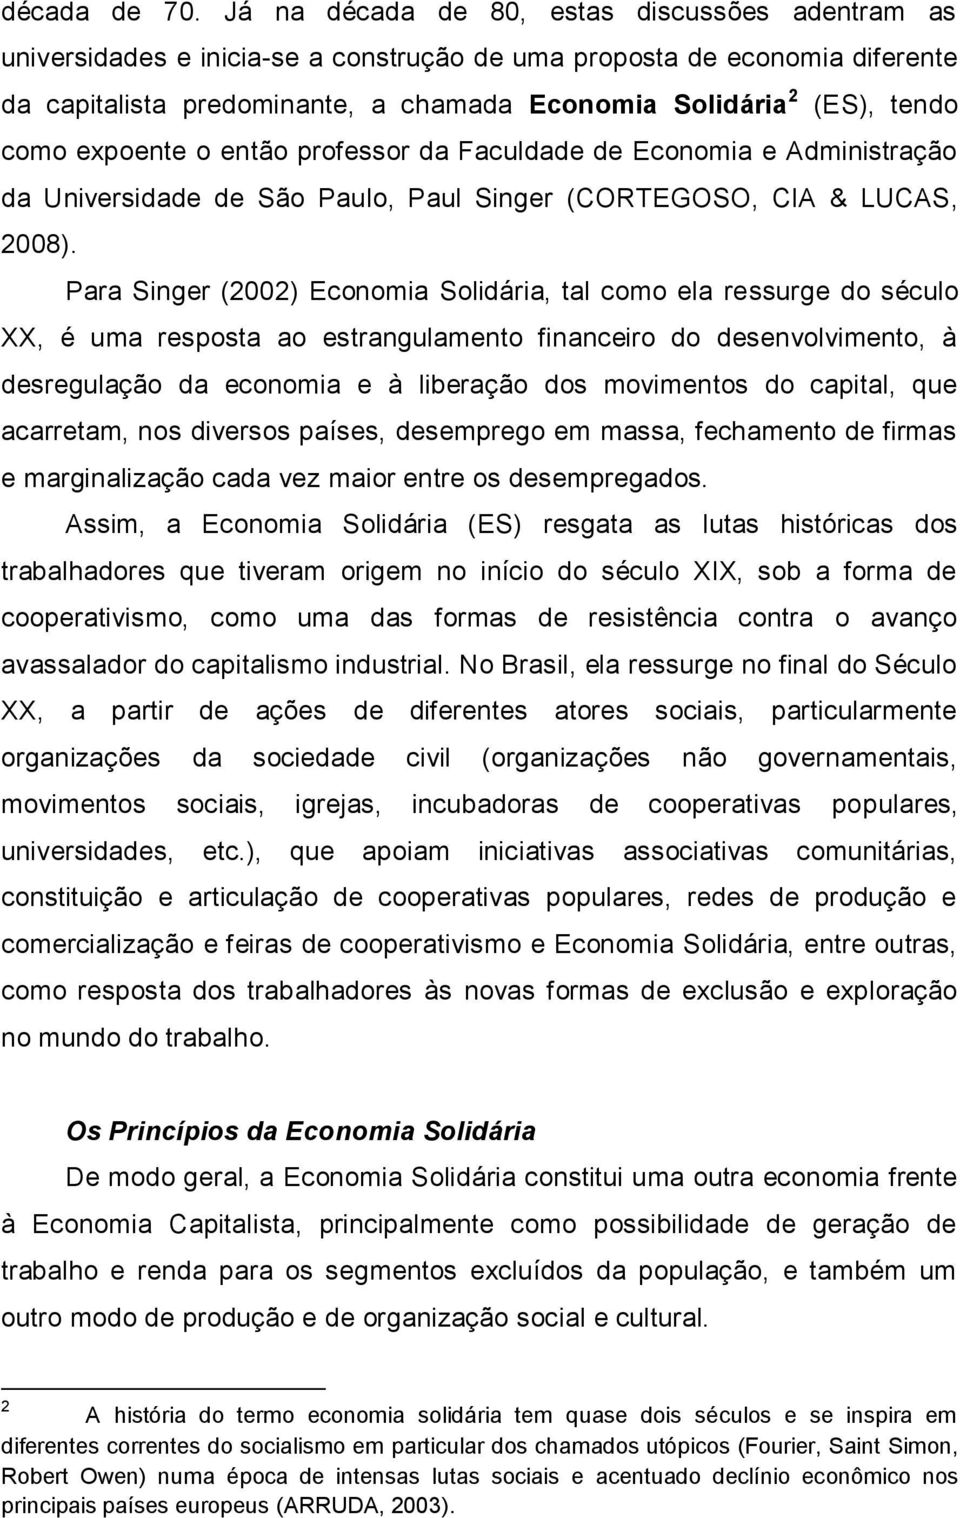 como expoente o então professor da Faculdade de Economia e Administração da Universidade de São Paulo, Paul Singer (CORTEGOSO, CIA & LUCAS, 2008).